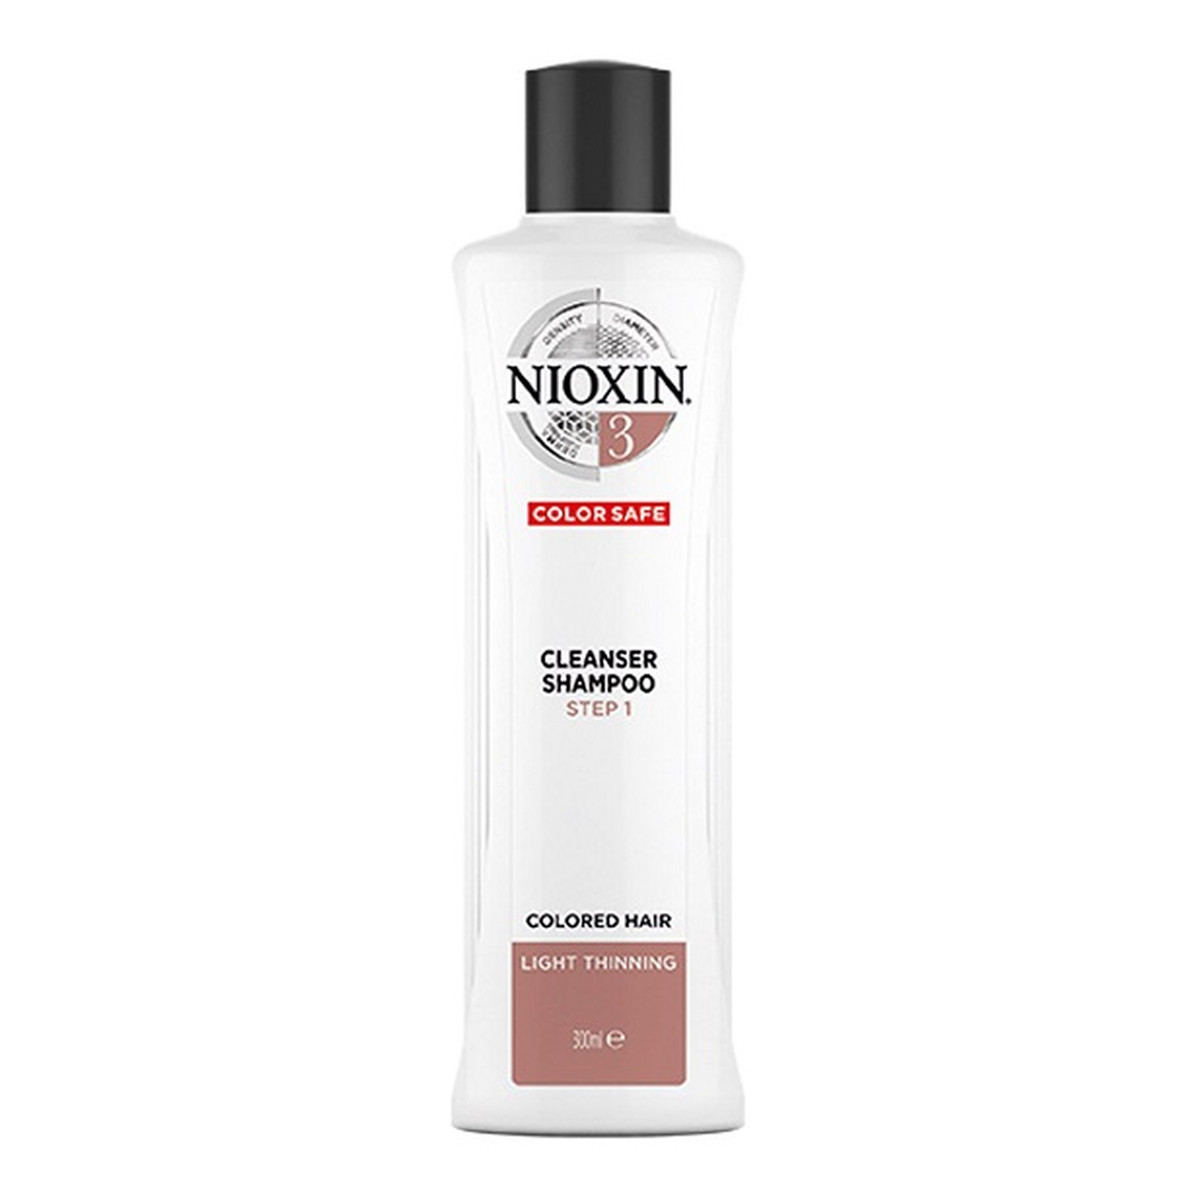 Nioxin System 3 cleanser shampoo oczyszczający szampon do włosów farbowanych lekko przerzedzonych 300ml